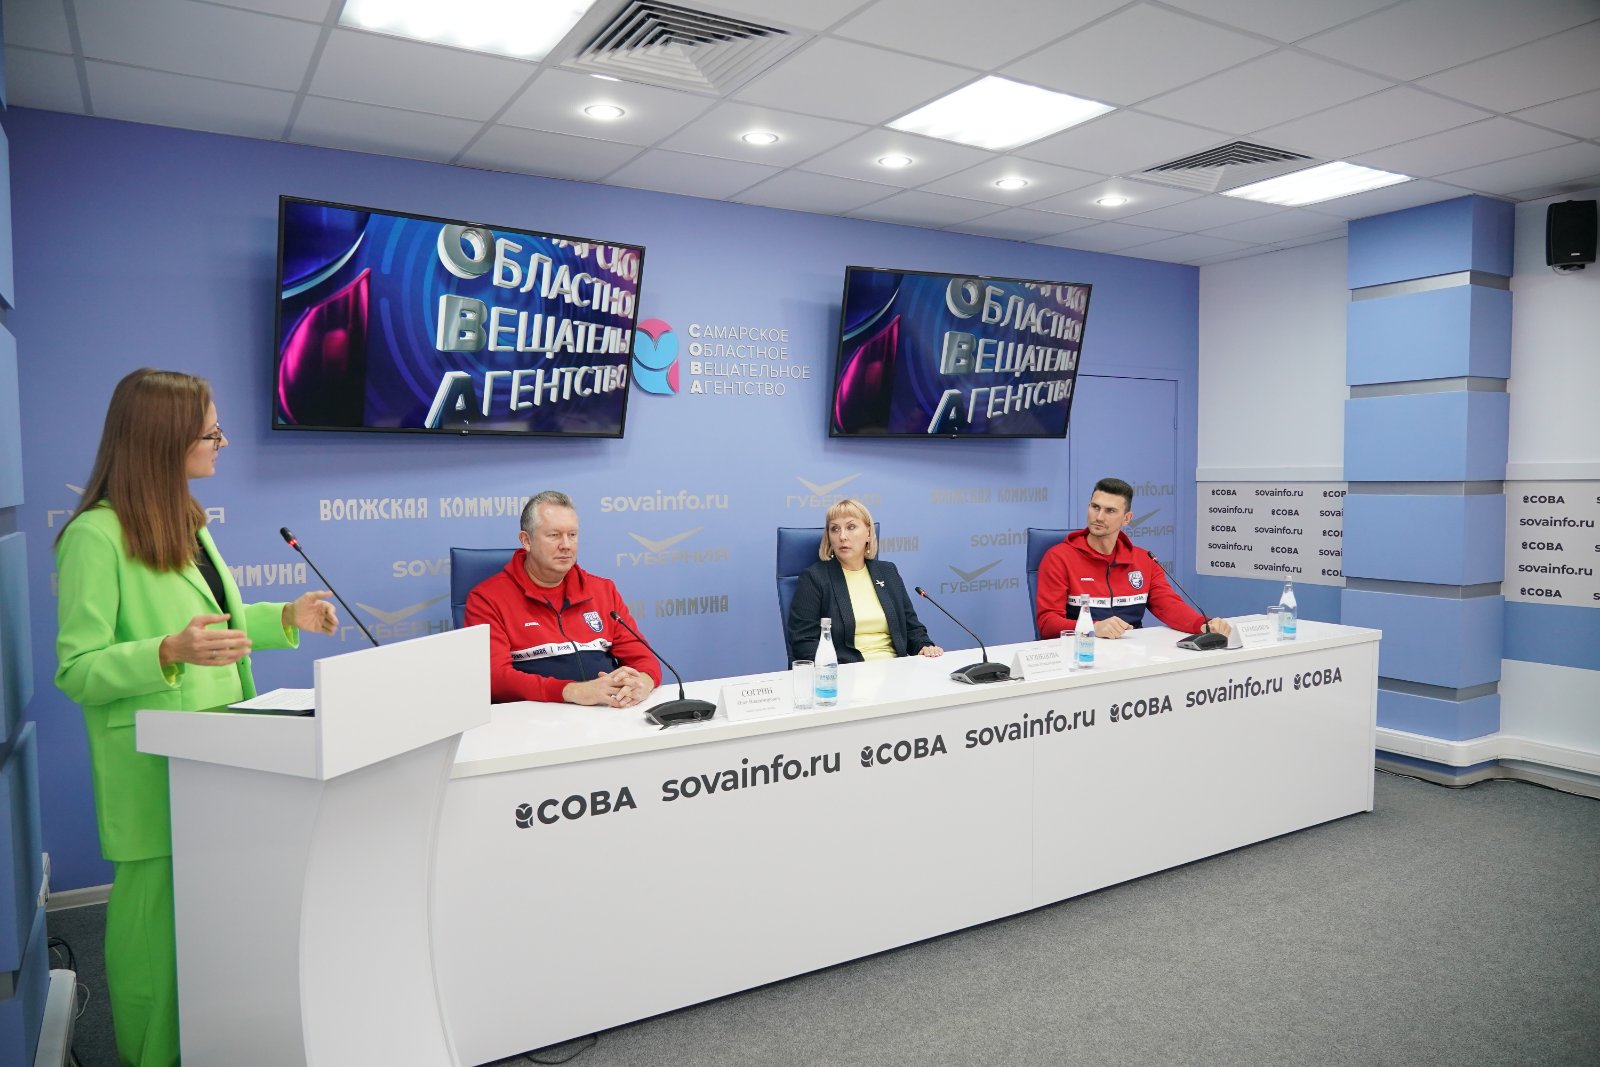 Прямая трансляция пресс-конференции "Волейбольный клуб "Нова": подготовка к играм российской Суперлиги"